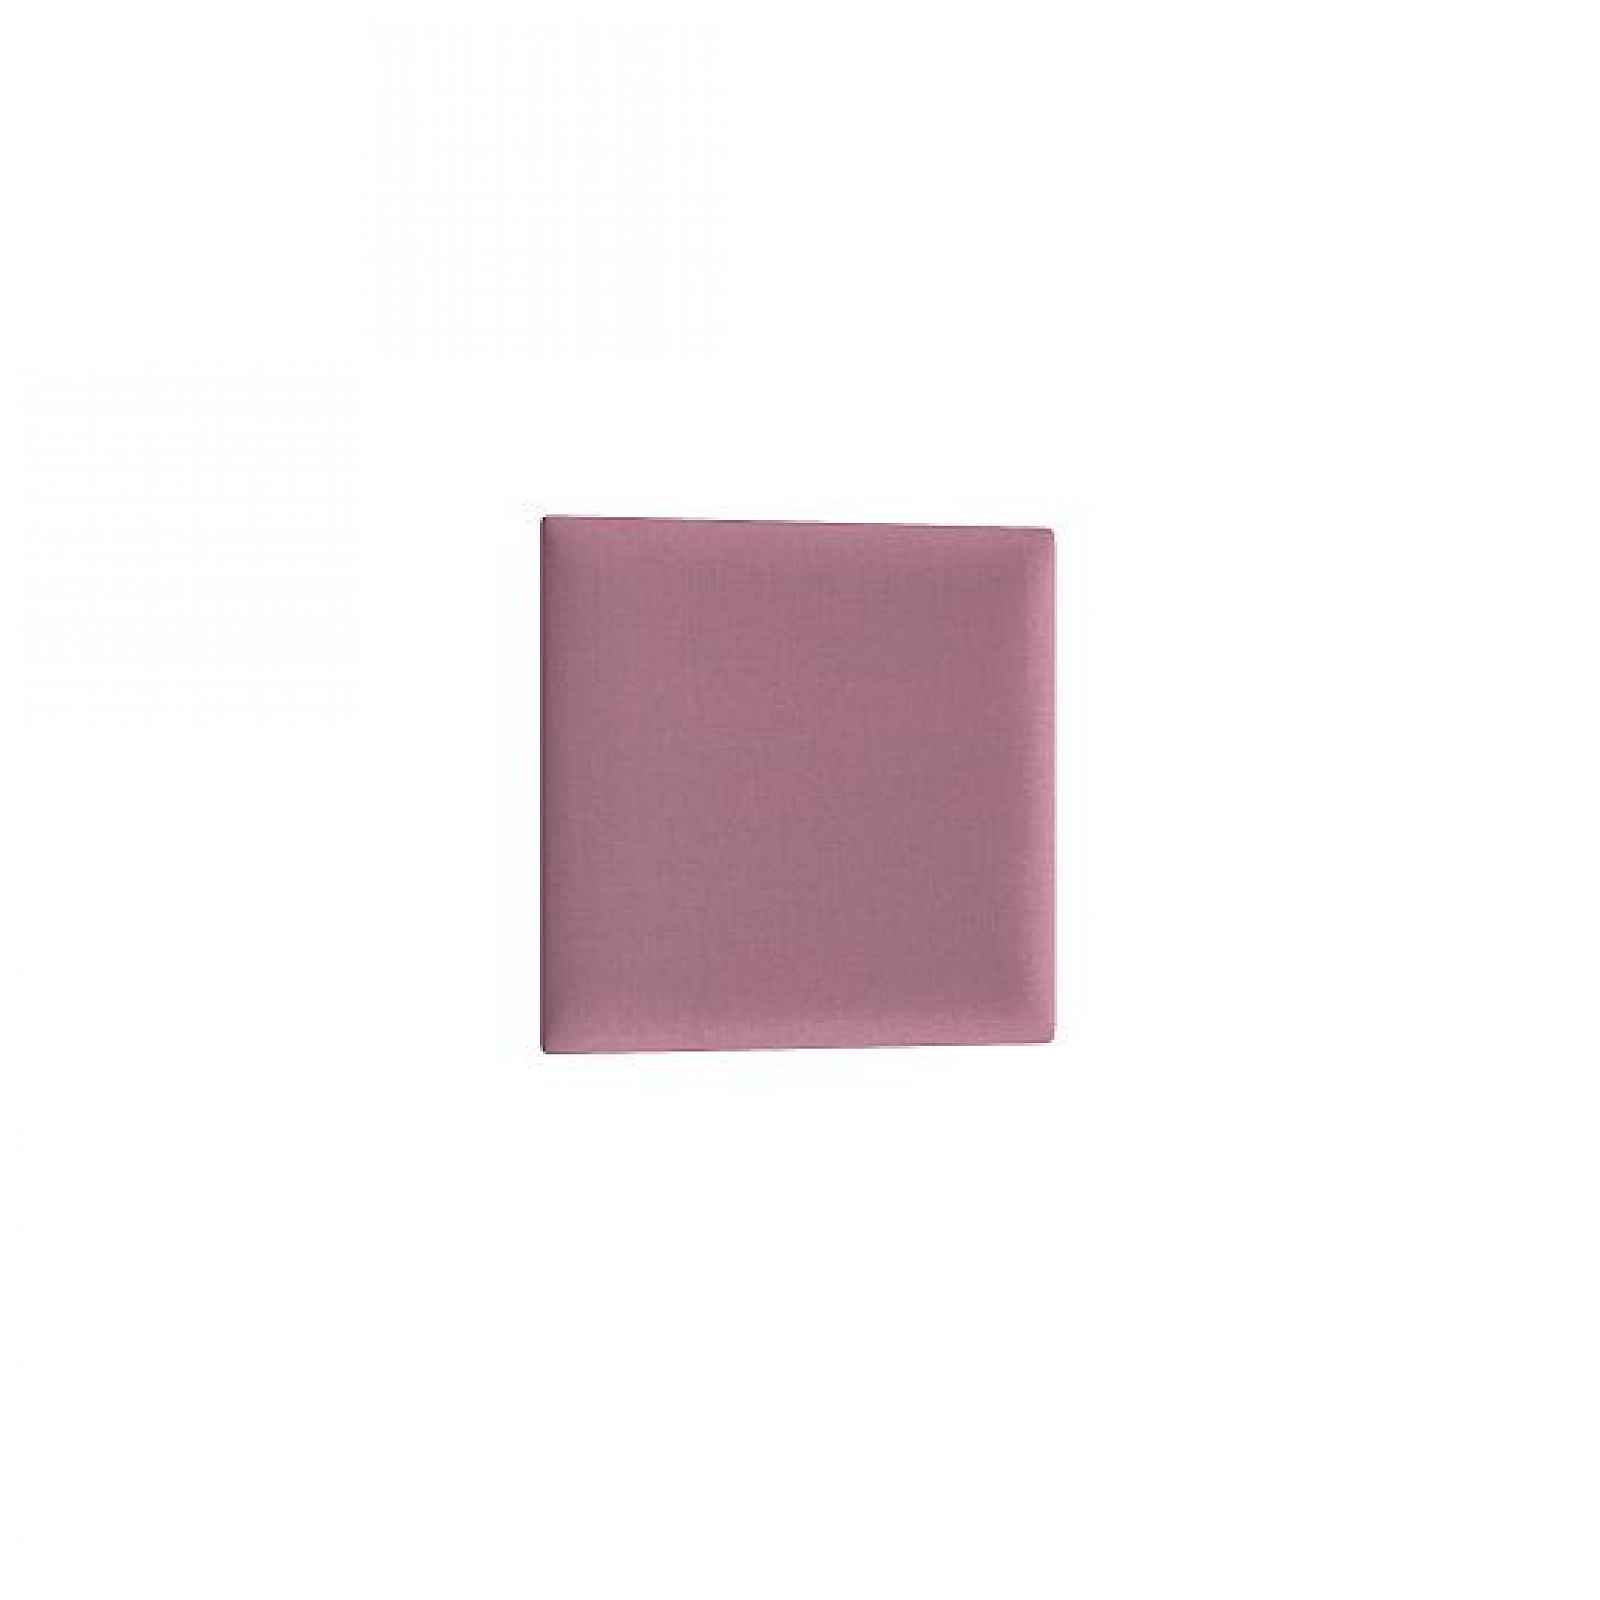 Dekorační nástěnný panel MATEO 30x30 cm, růžová